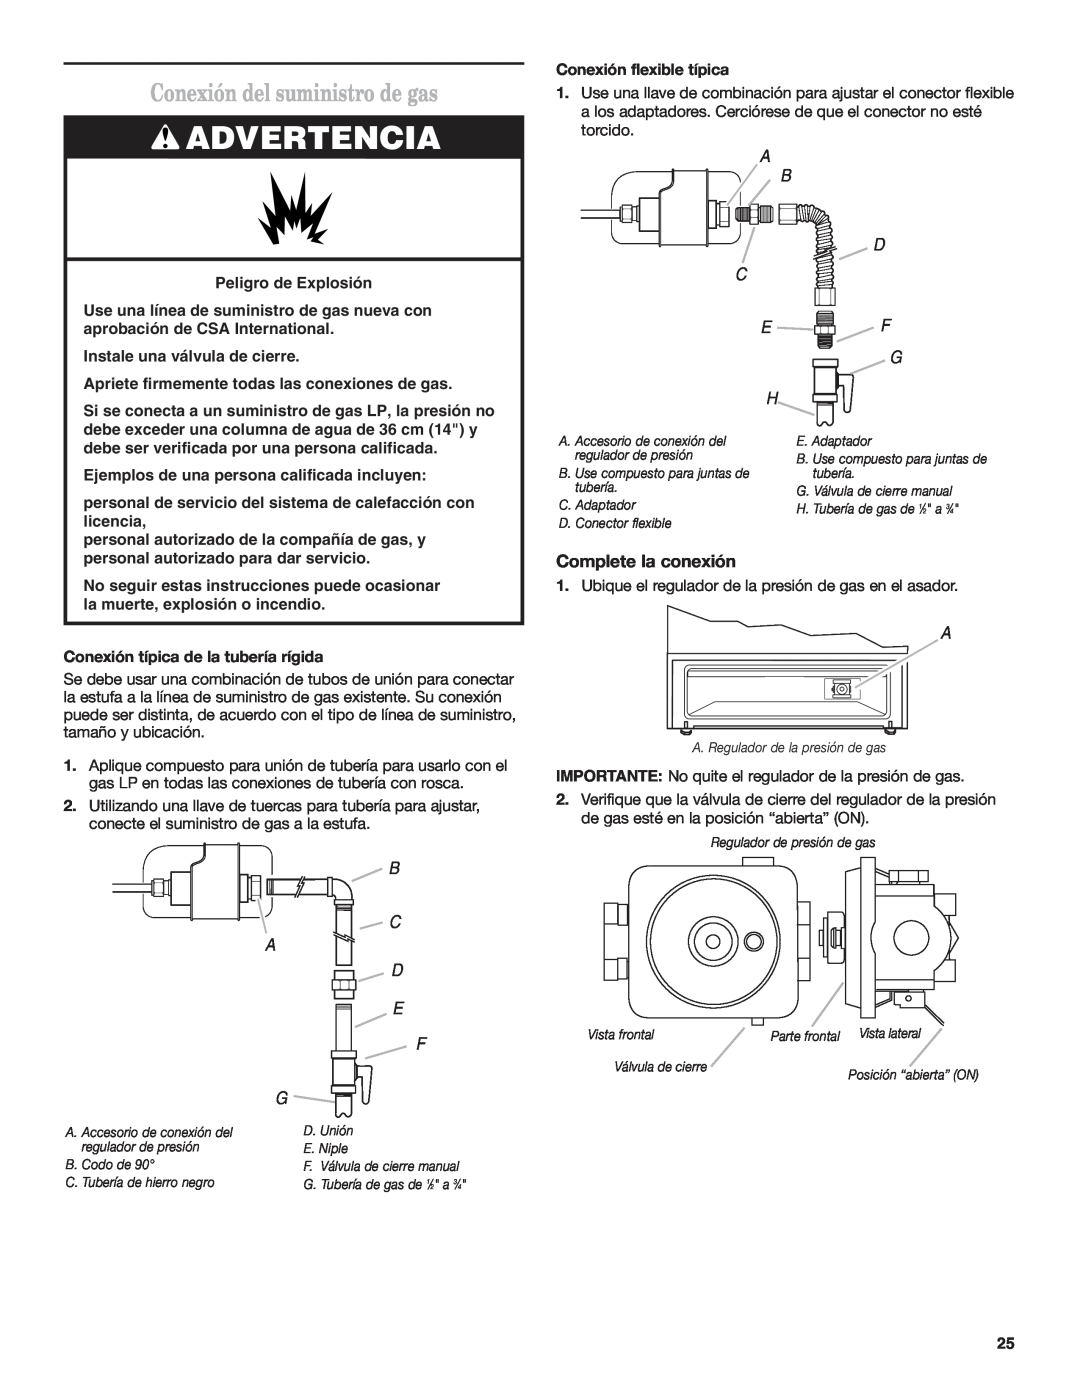 Estate W10173755D installation instructions Conexión del suministro de gas, Advertencia, Complete la conexión, B C A D E F 